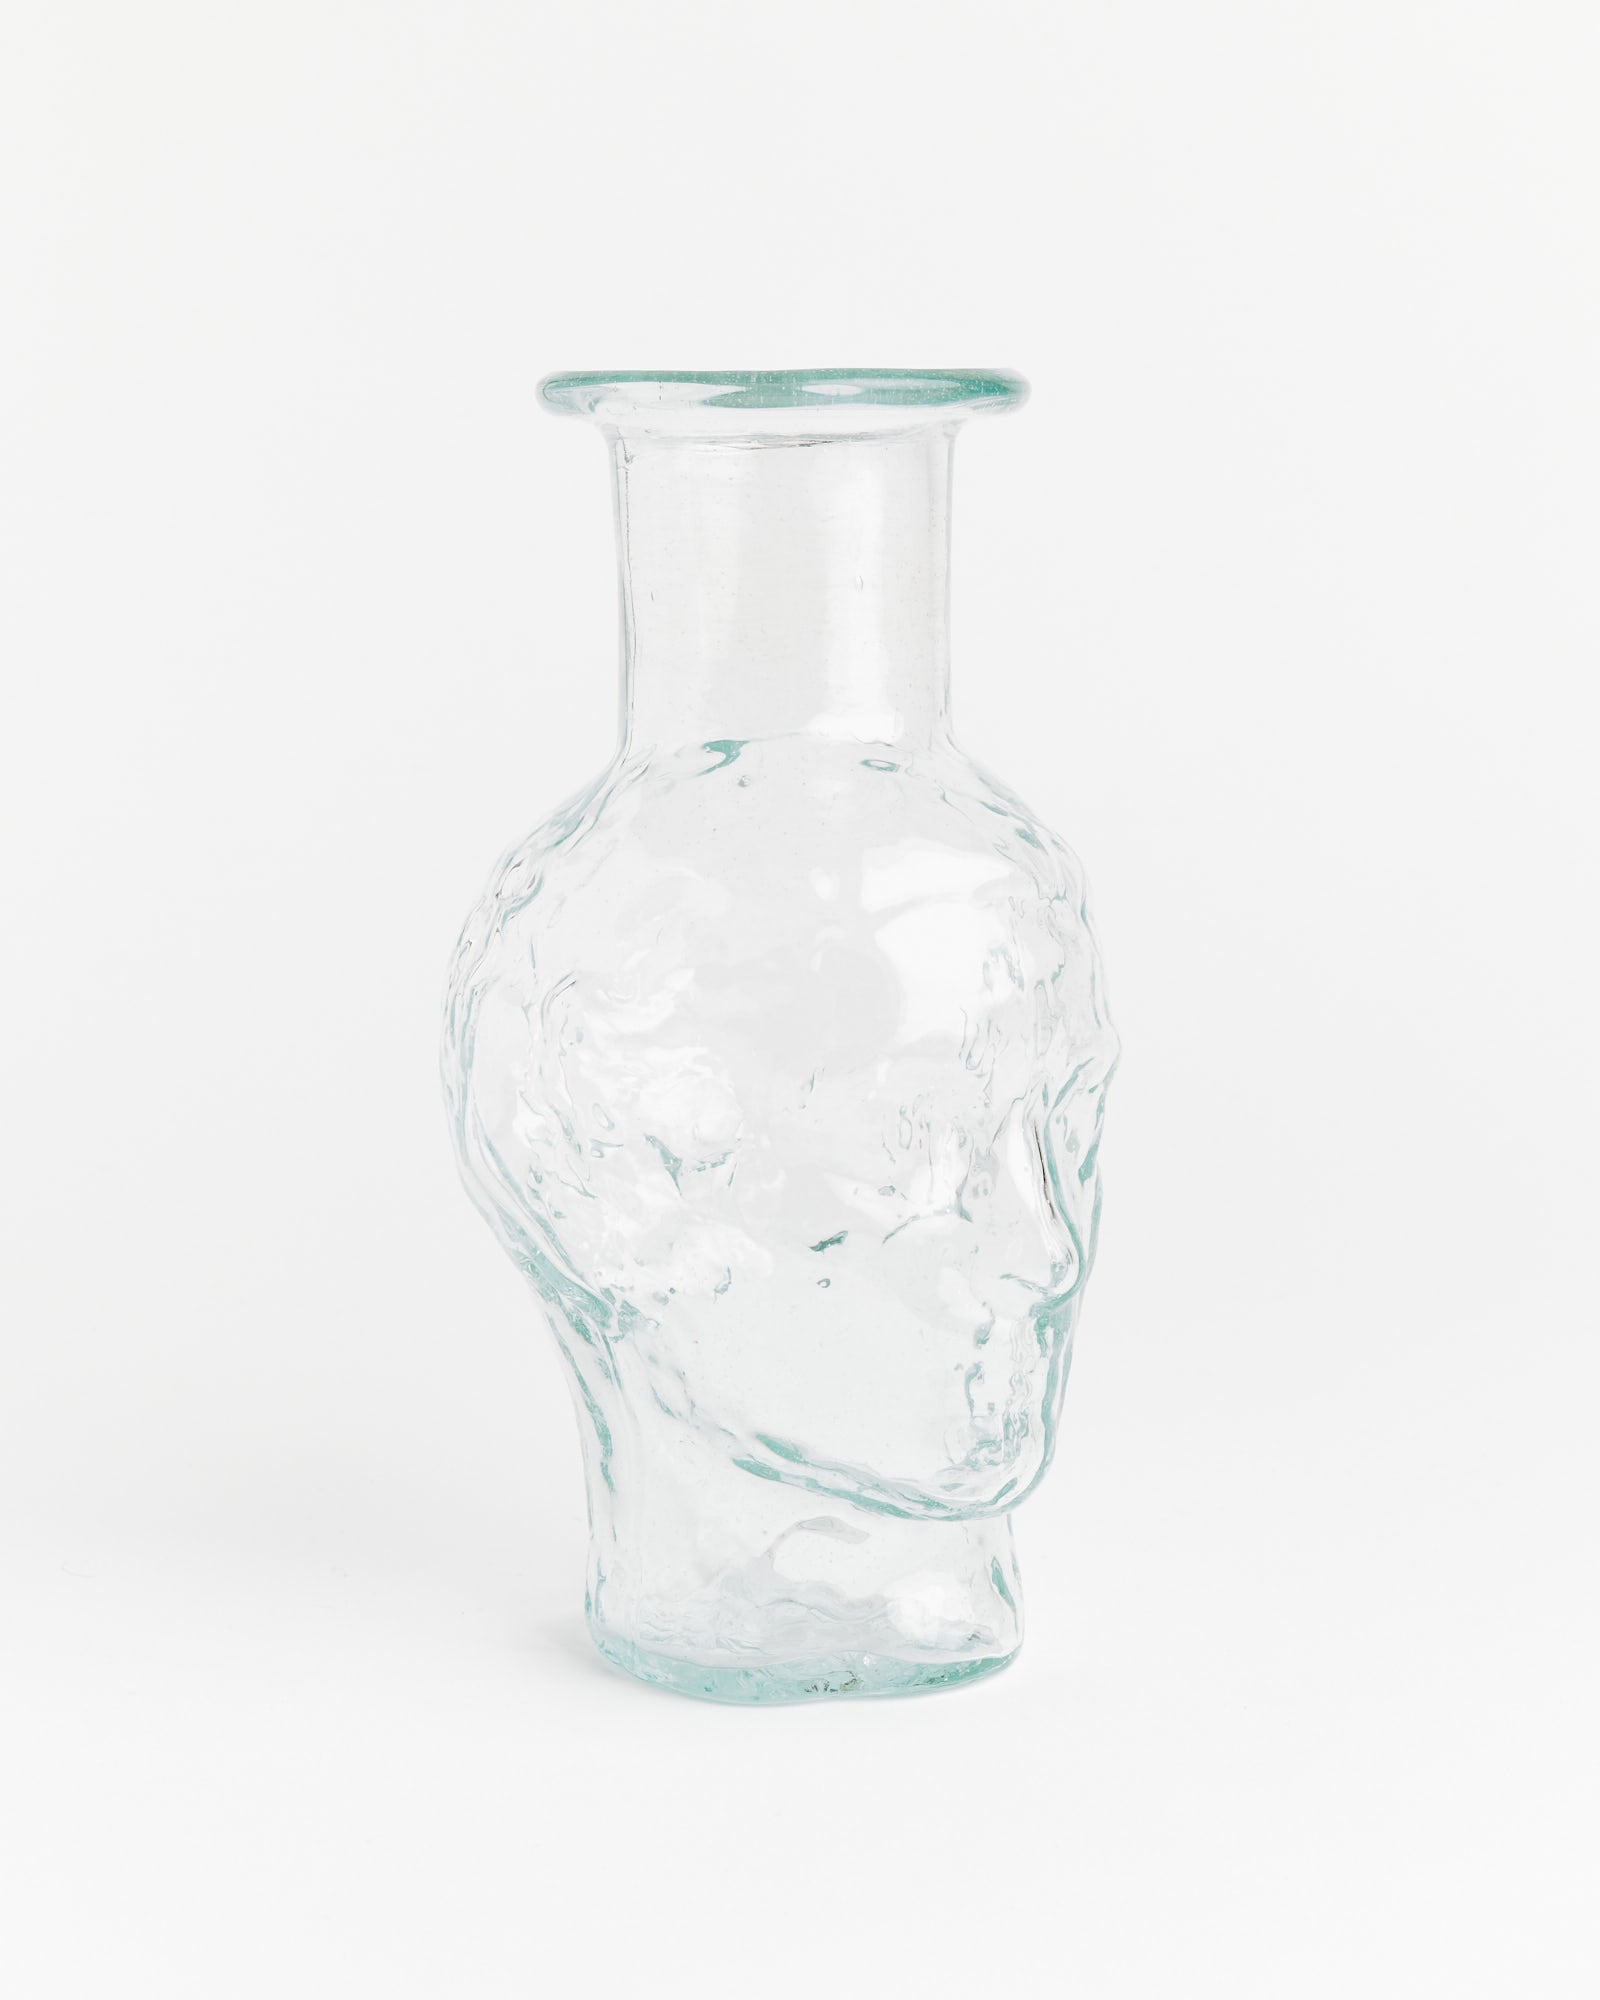 Roma Chemise Vase in Transparent